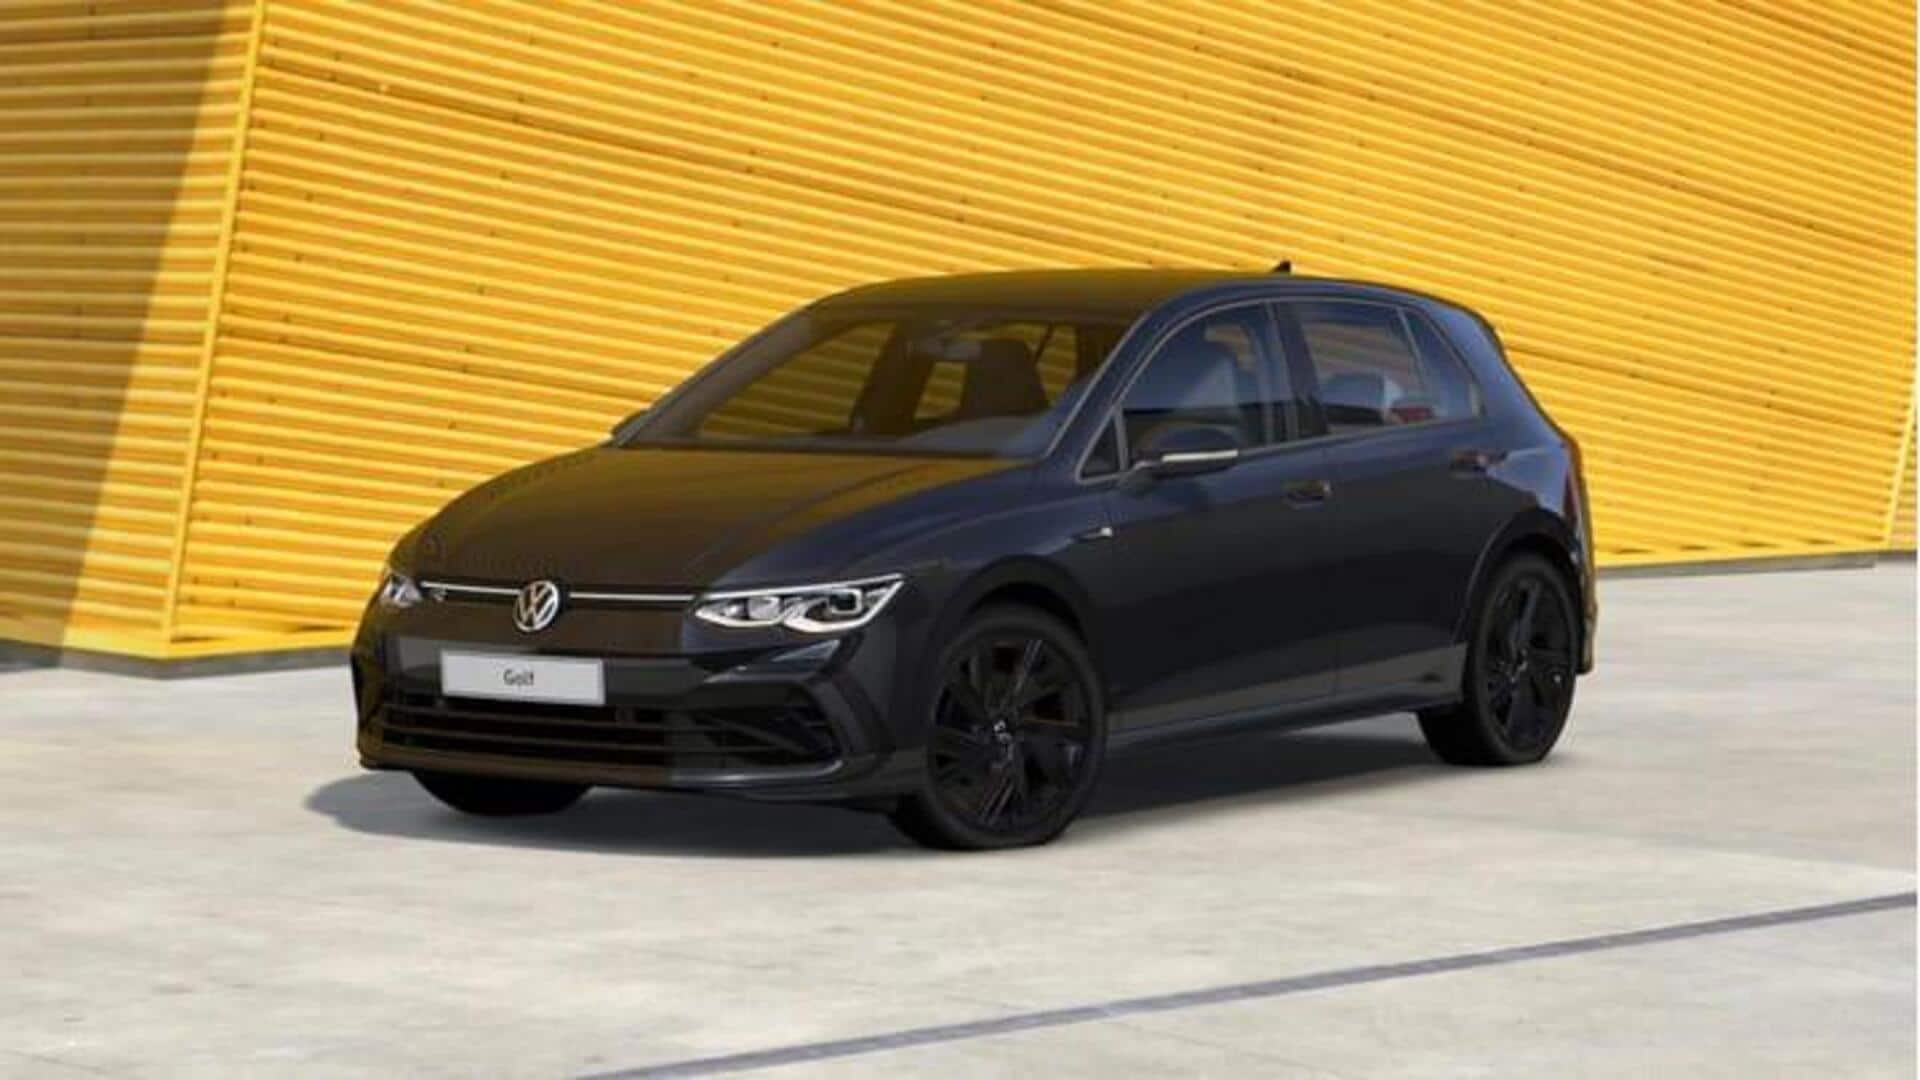 Volkswagen Golf Black Edition resmi diluncurkan: Periksa harga dan fiturnya